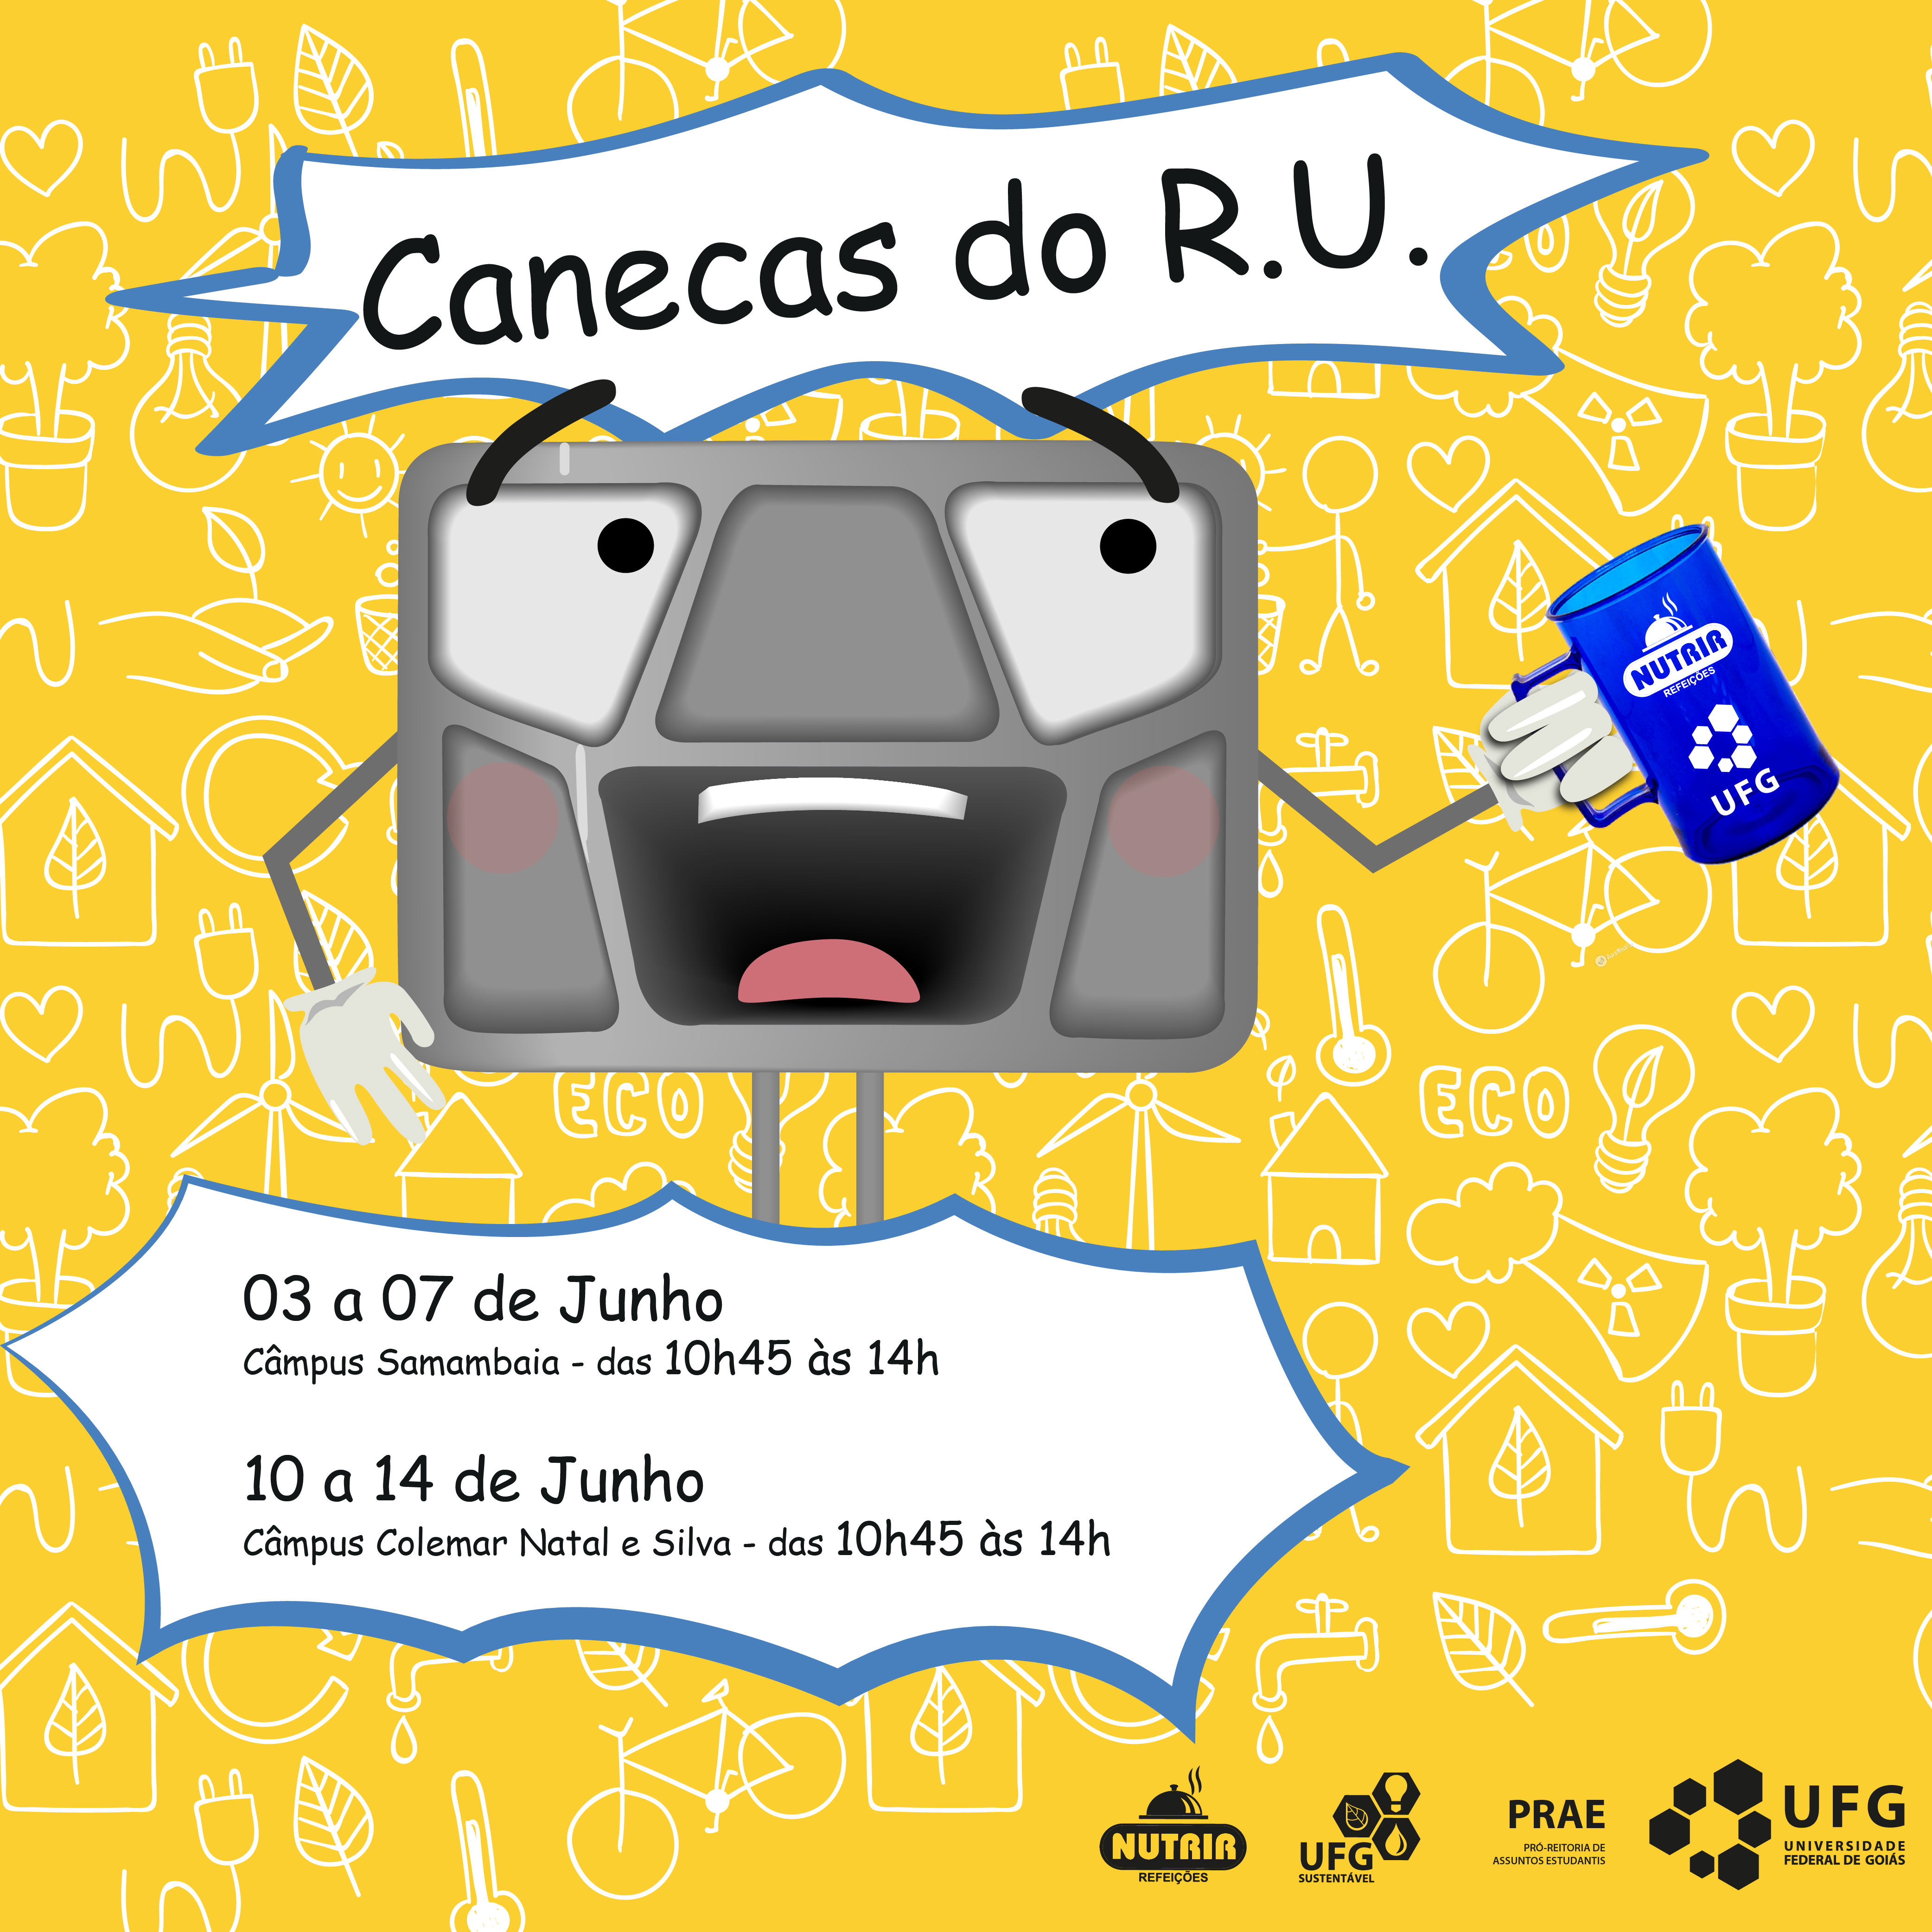 Canecas RU Capa Site Divulgação